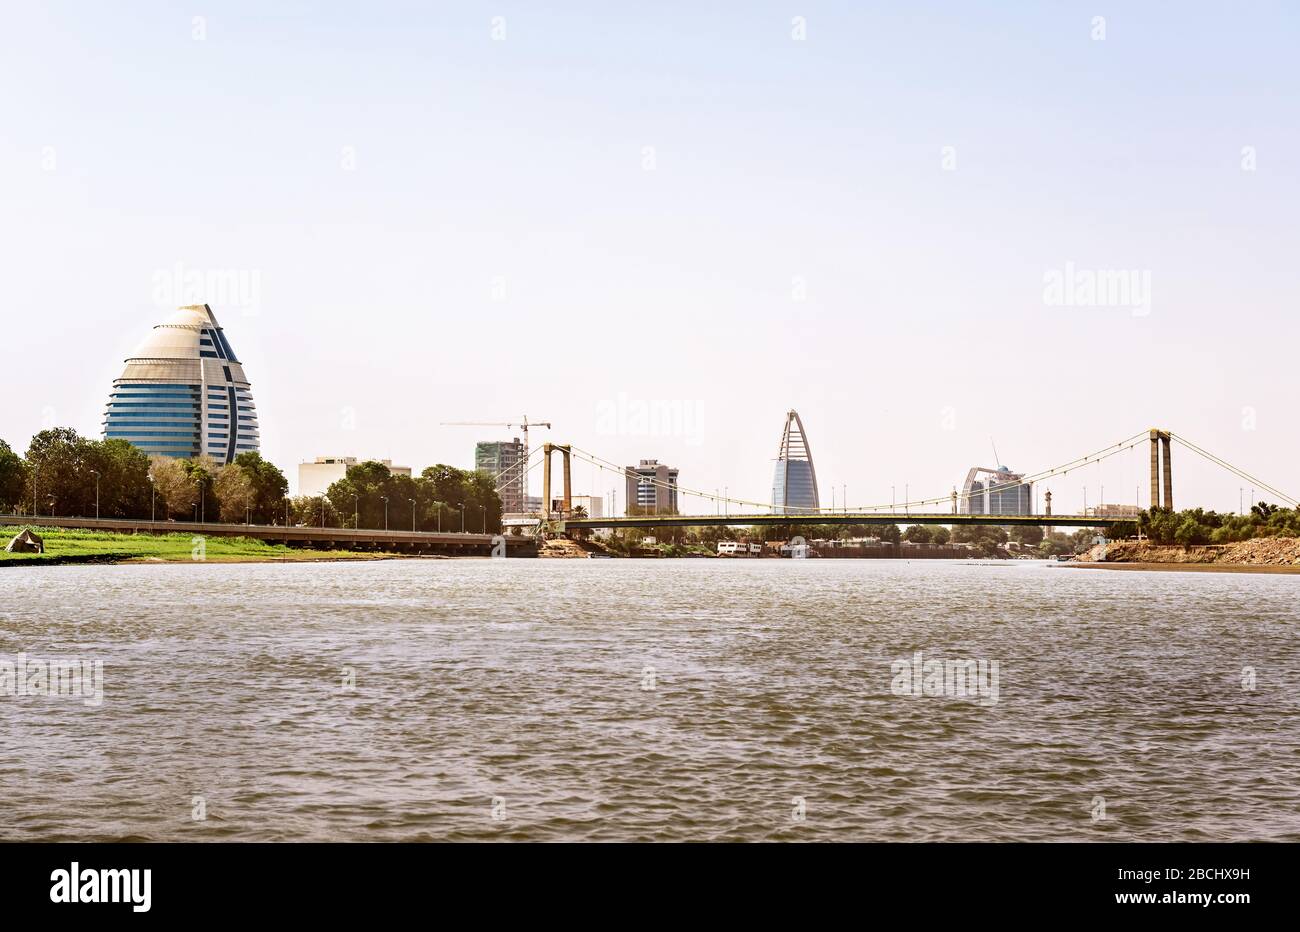 Vue sur le paysage urbain de Khartoum avec l'hôtel Burj Al Fateh, le pont sur le Nil et les bâtiments modernes à l'arrière-plan. Banque D'Images